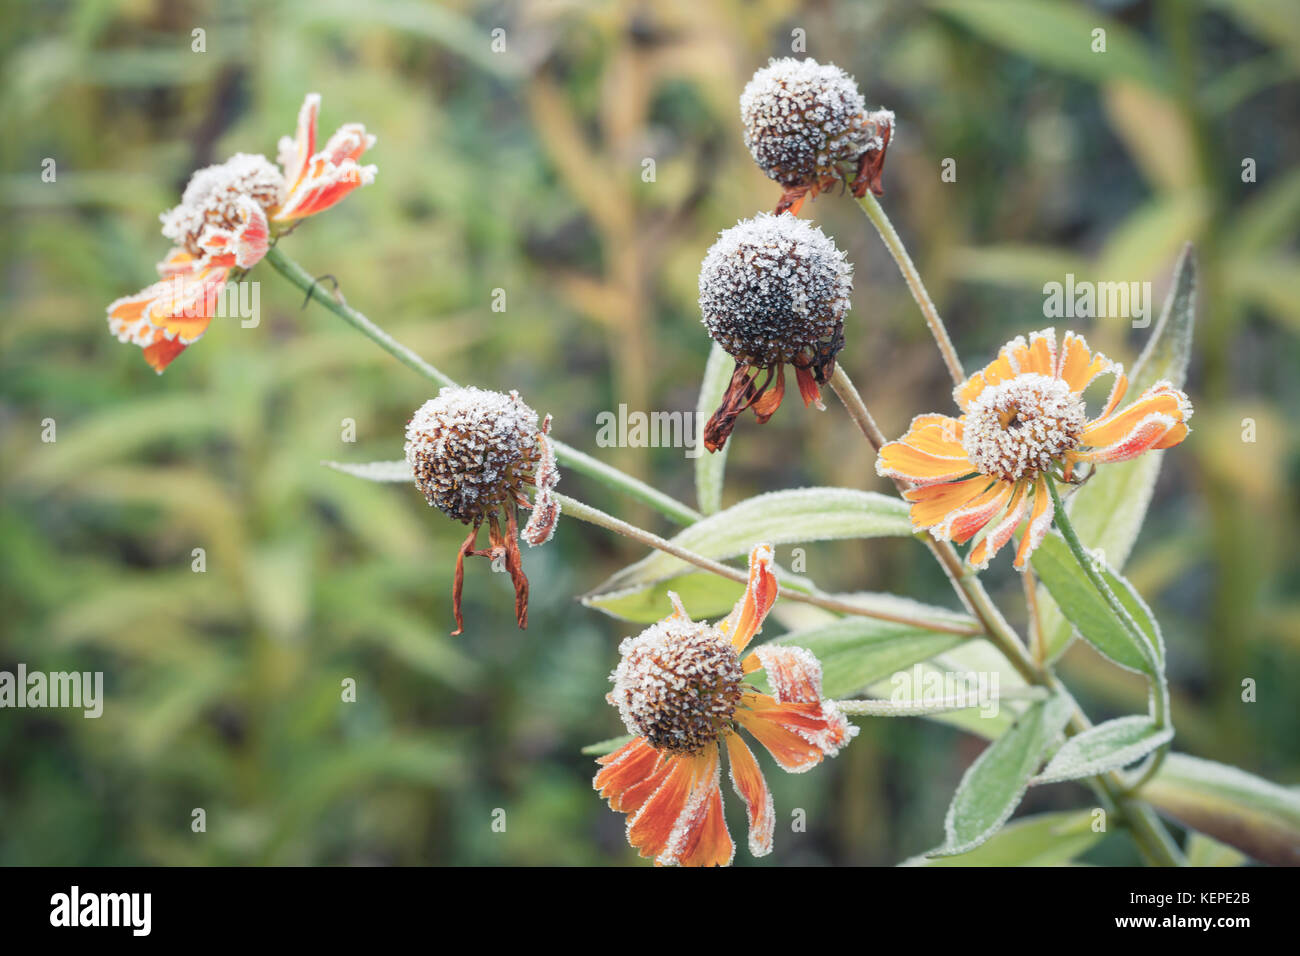 Heladas tempranas. helenium flores cubiertas con escarcha, macro fotografía con el enfoque selectivo Foto de stock